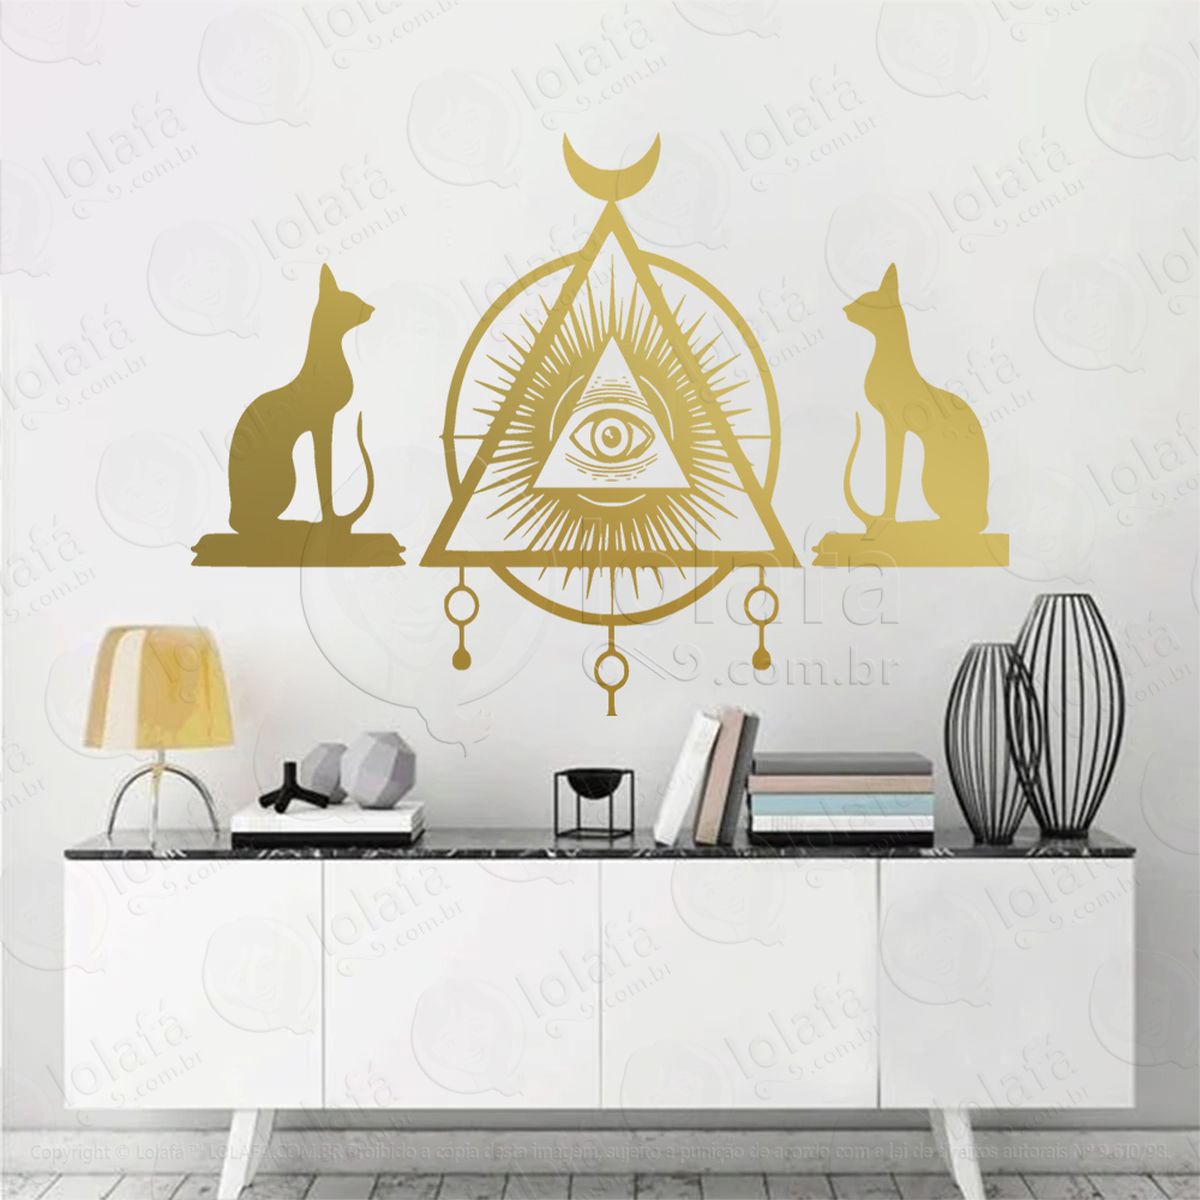 olho da pirâmide e gatos cats pyramid eye adesivo de parede decorativo para casa, sala, quarto, vidro e altar ocultista - mod:156